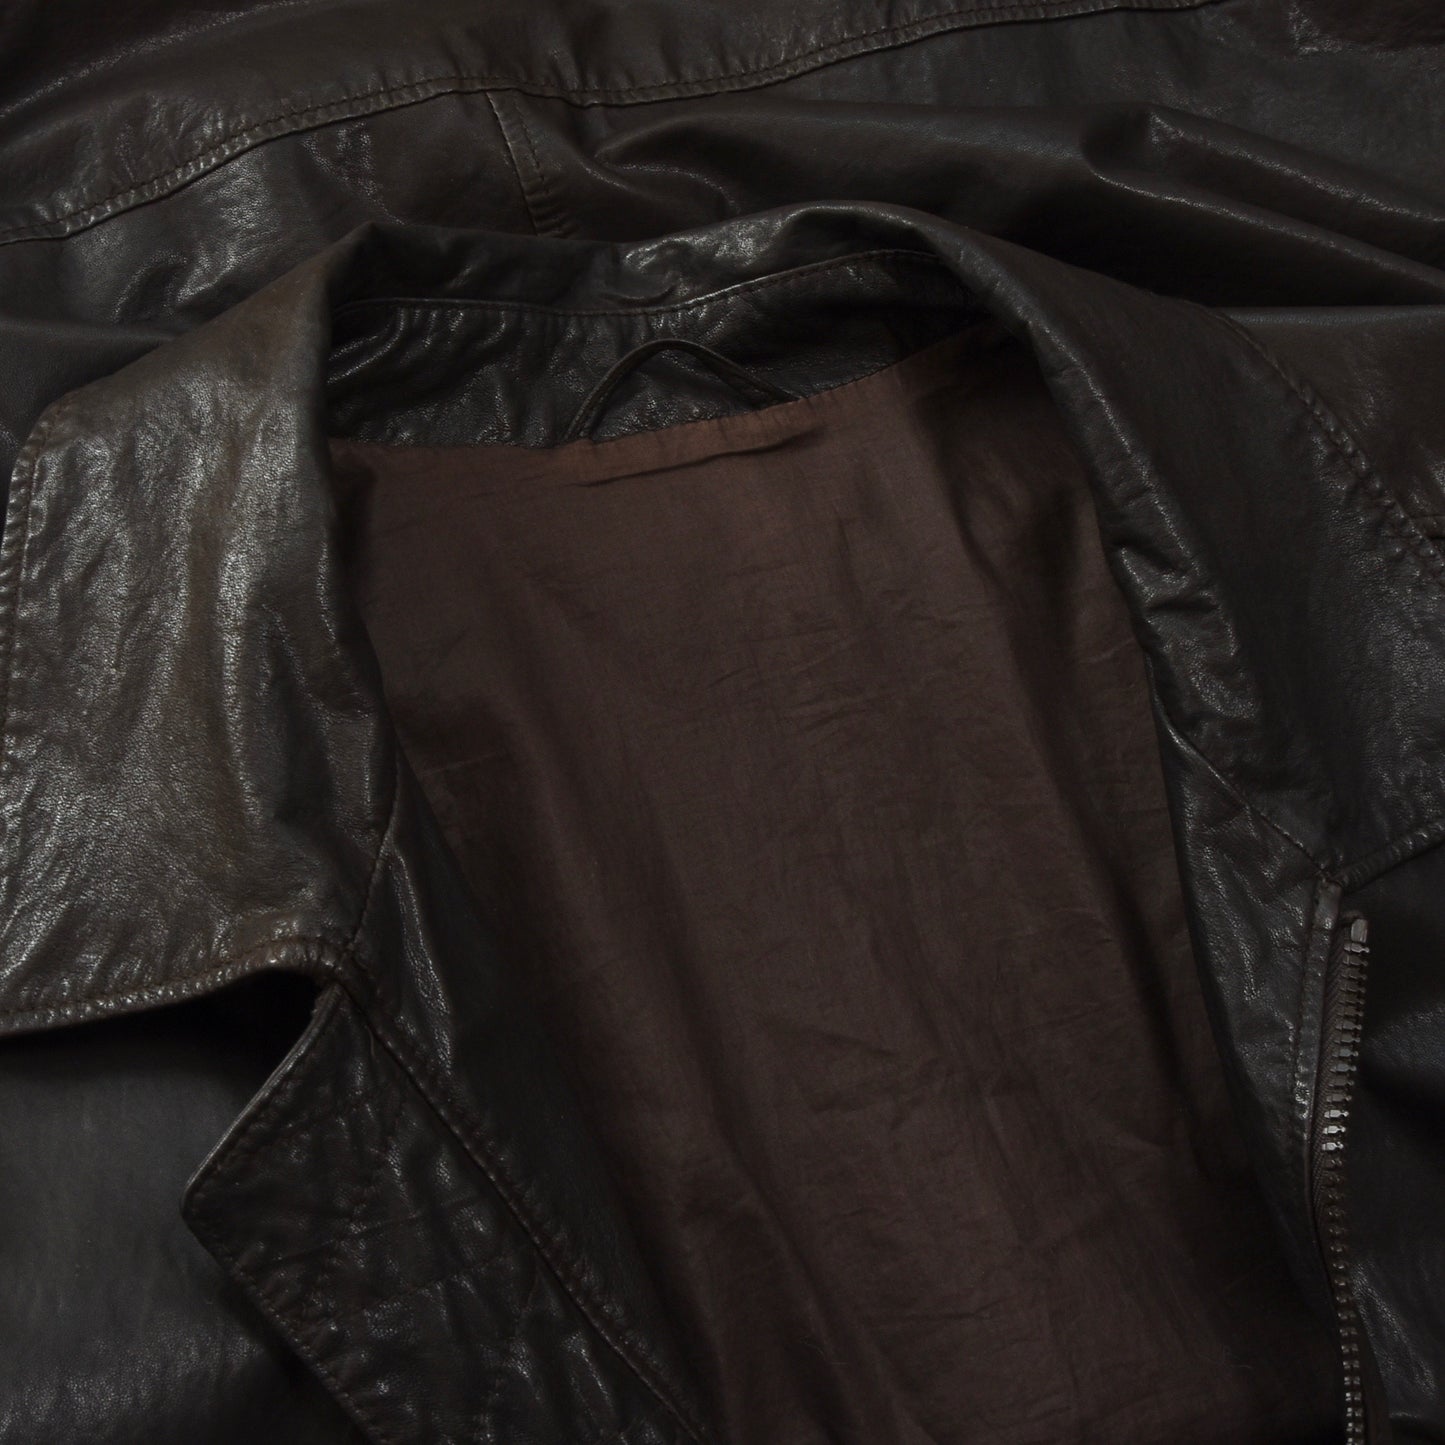 Z Zegna Leather Jacket Size 54/XL - Dark Brown